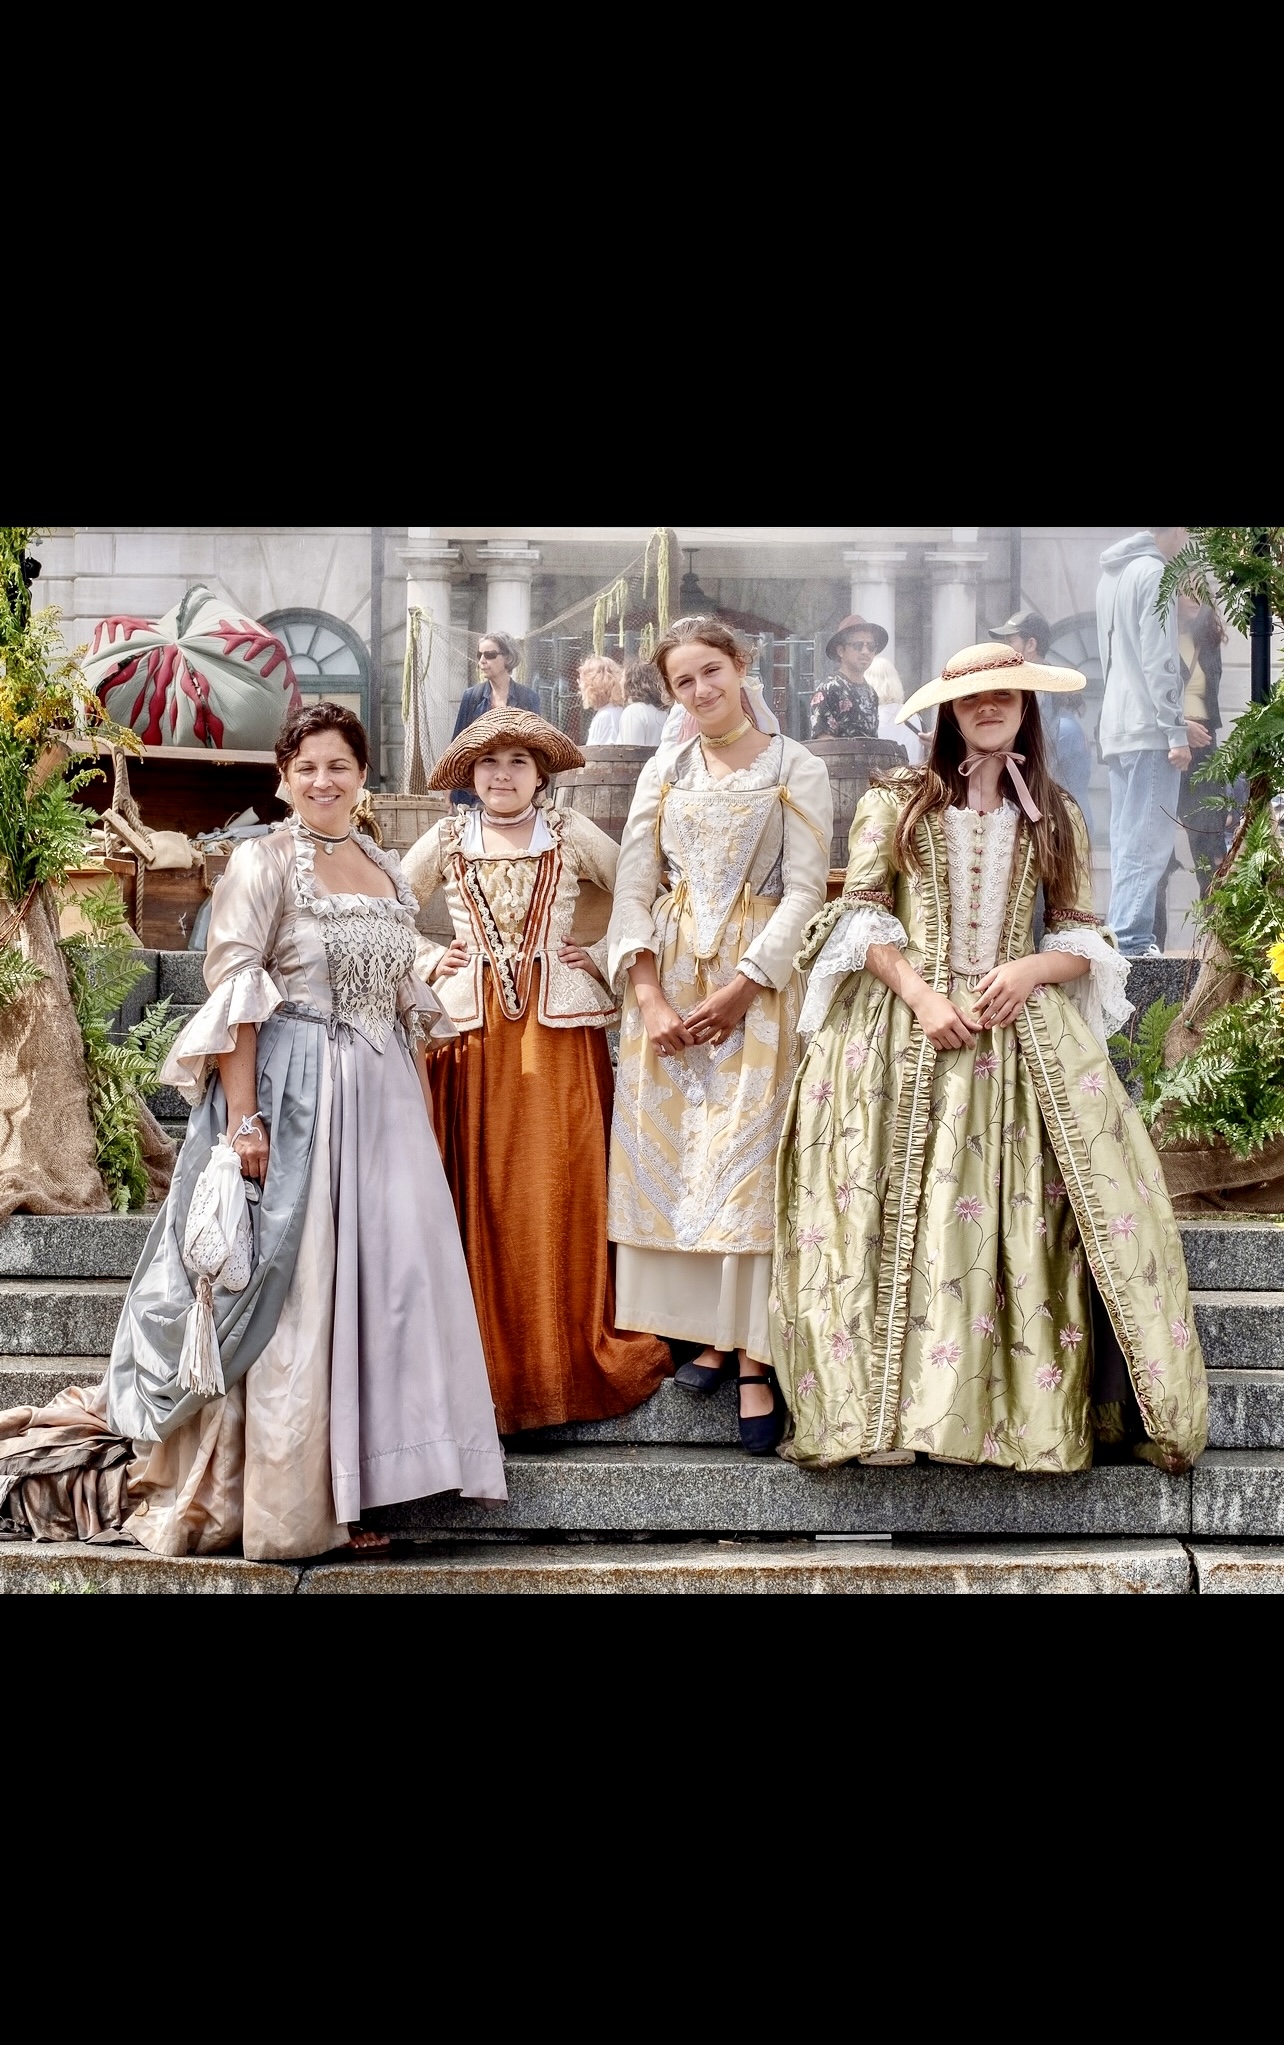 Un groupe de femmes vêtues de costumes de la Renaissance mettant en valeur des vêtements culturels.